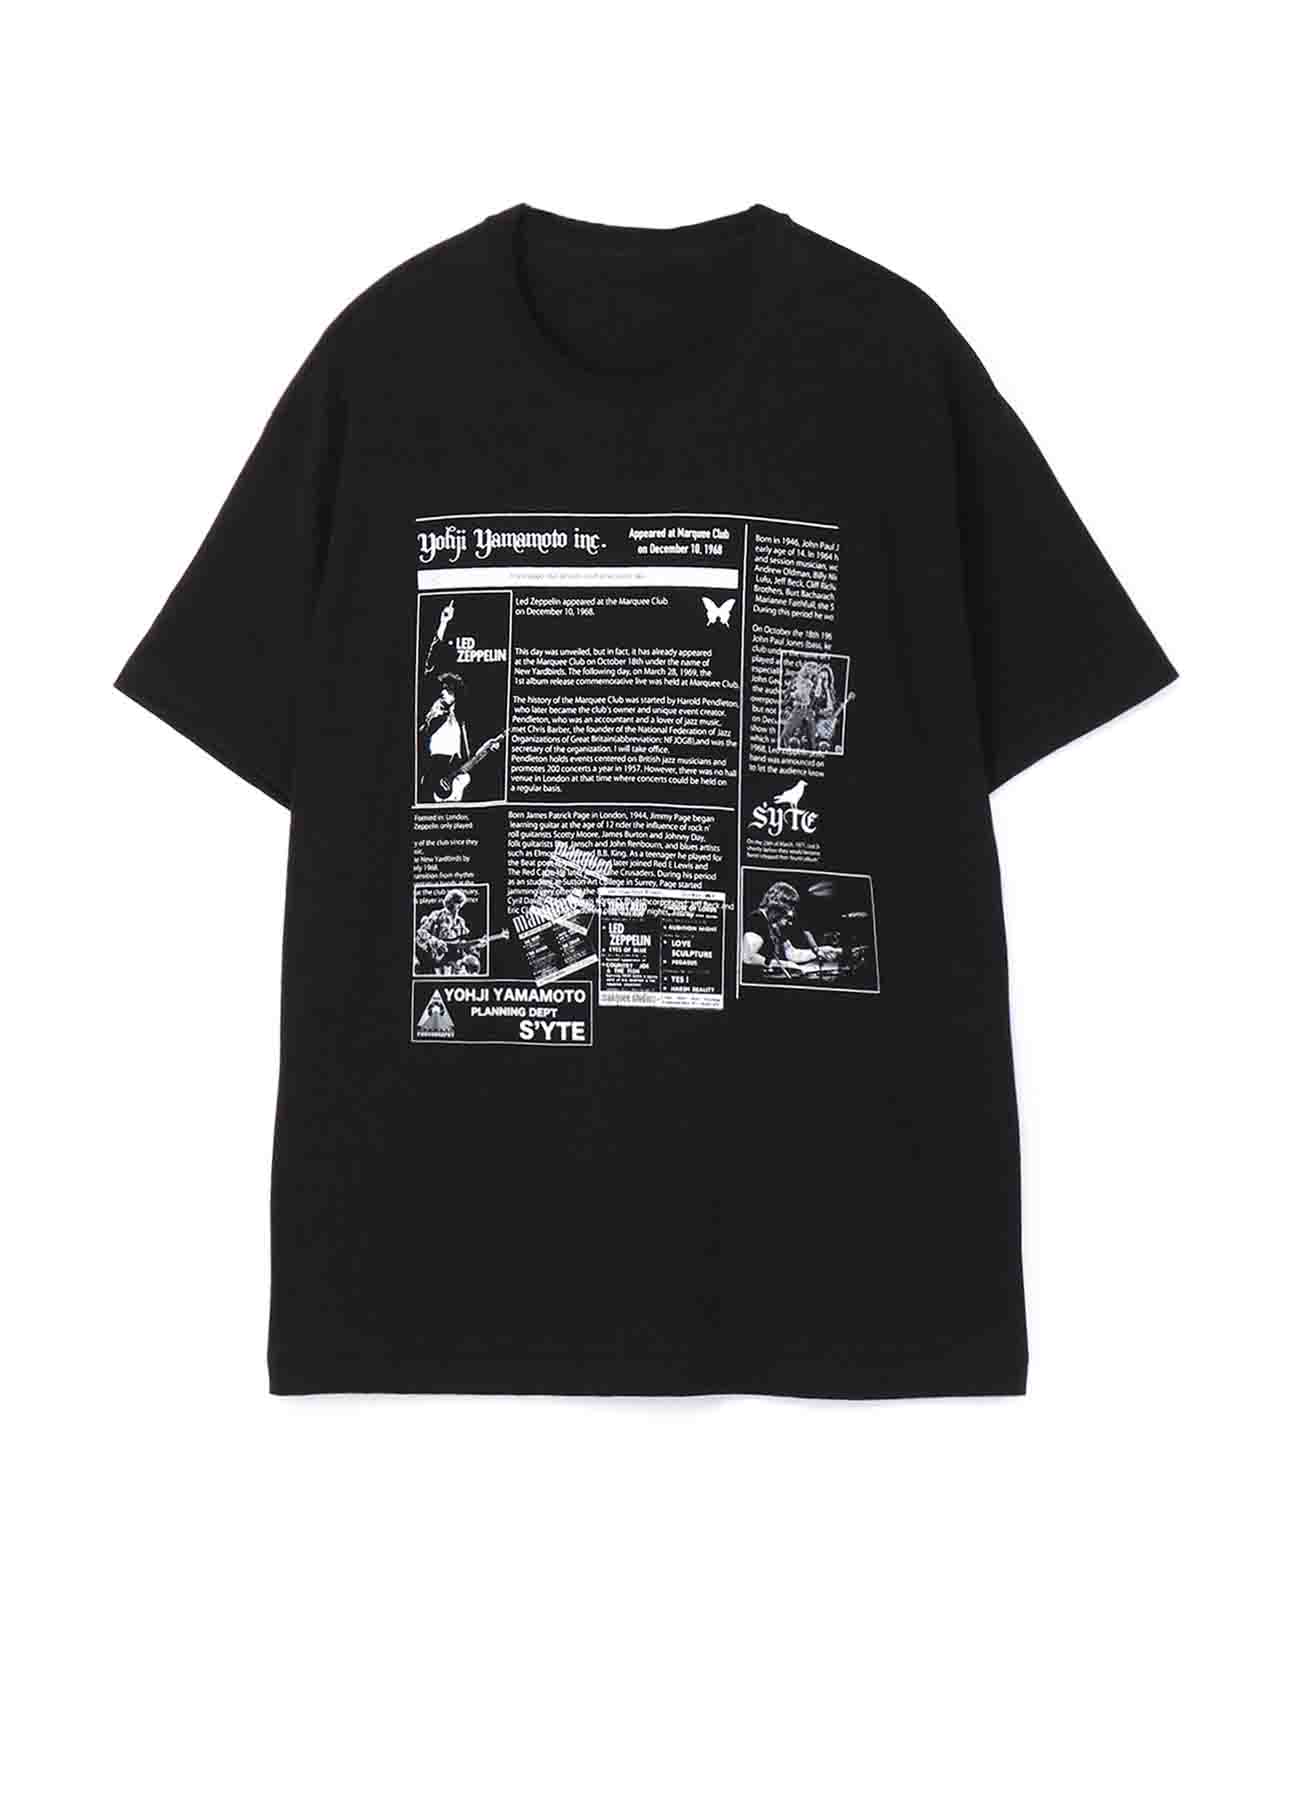 S'YTE × Dick Barnatt / Led Zeppelin T-shirt